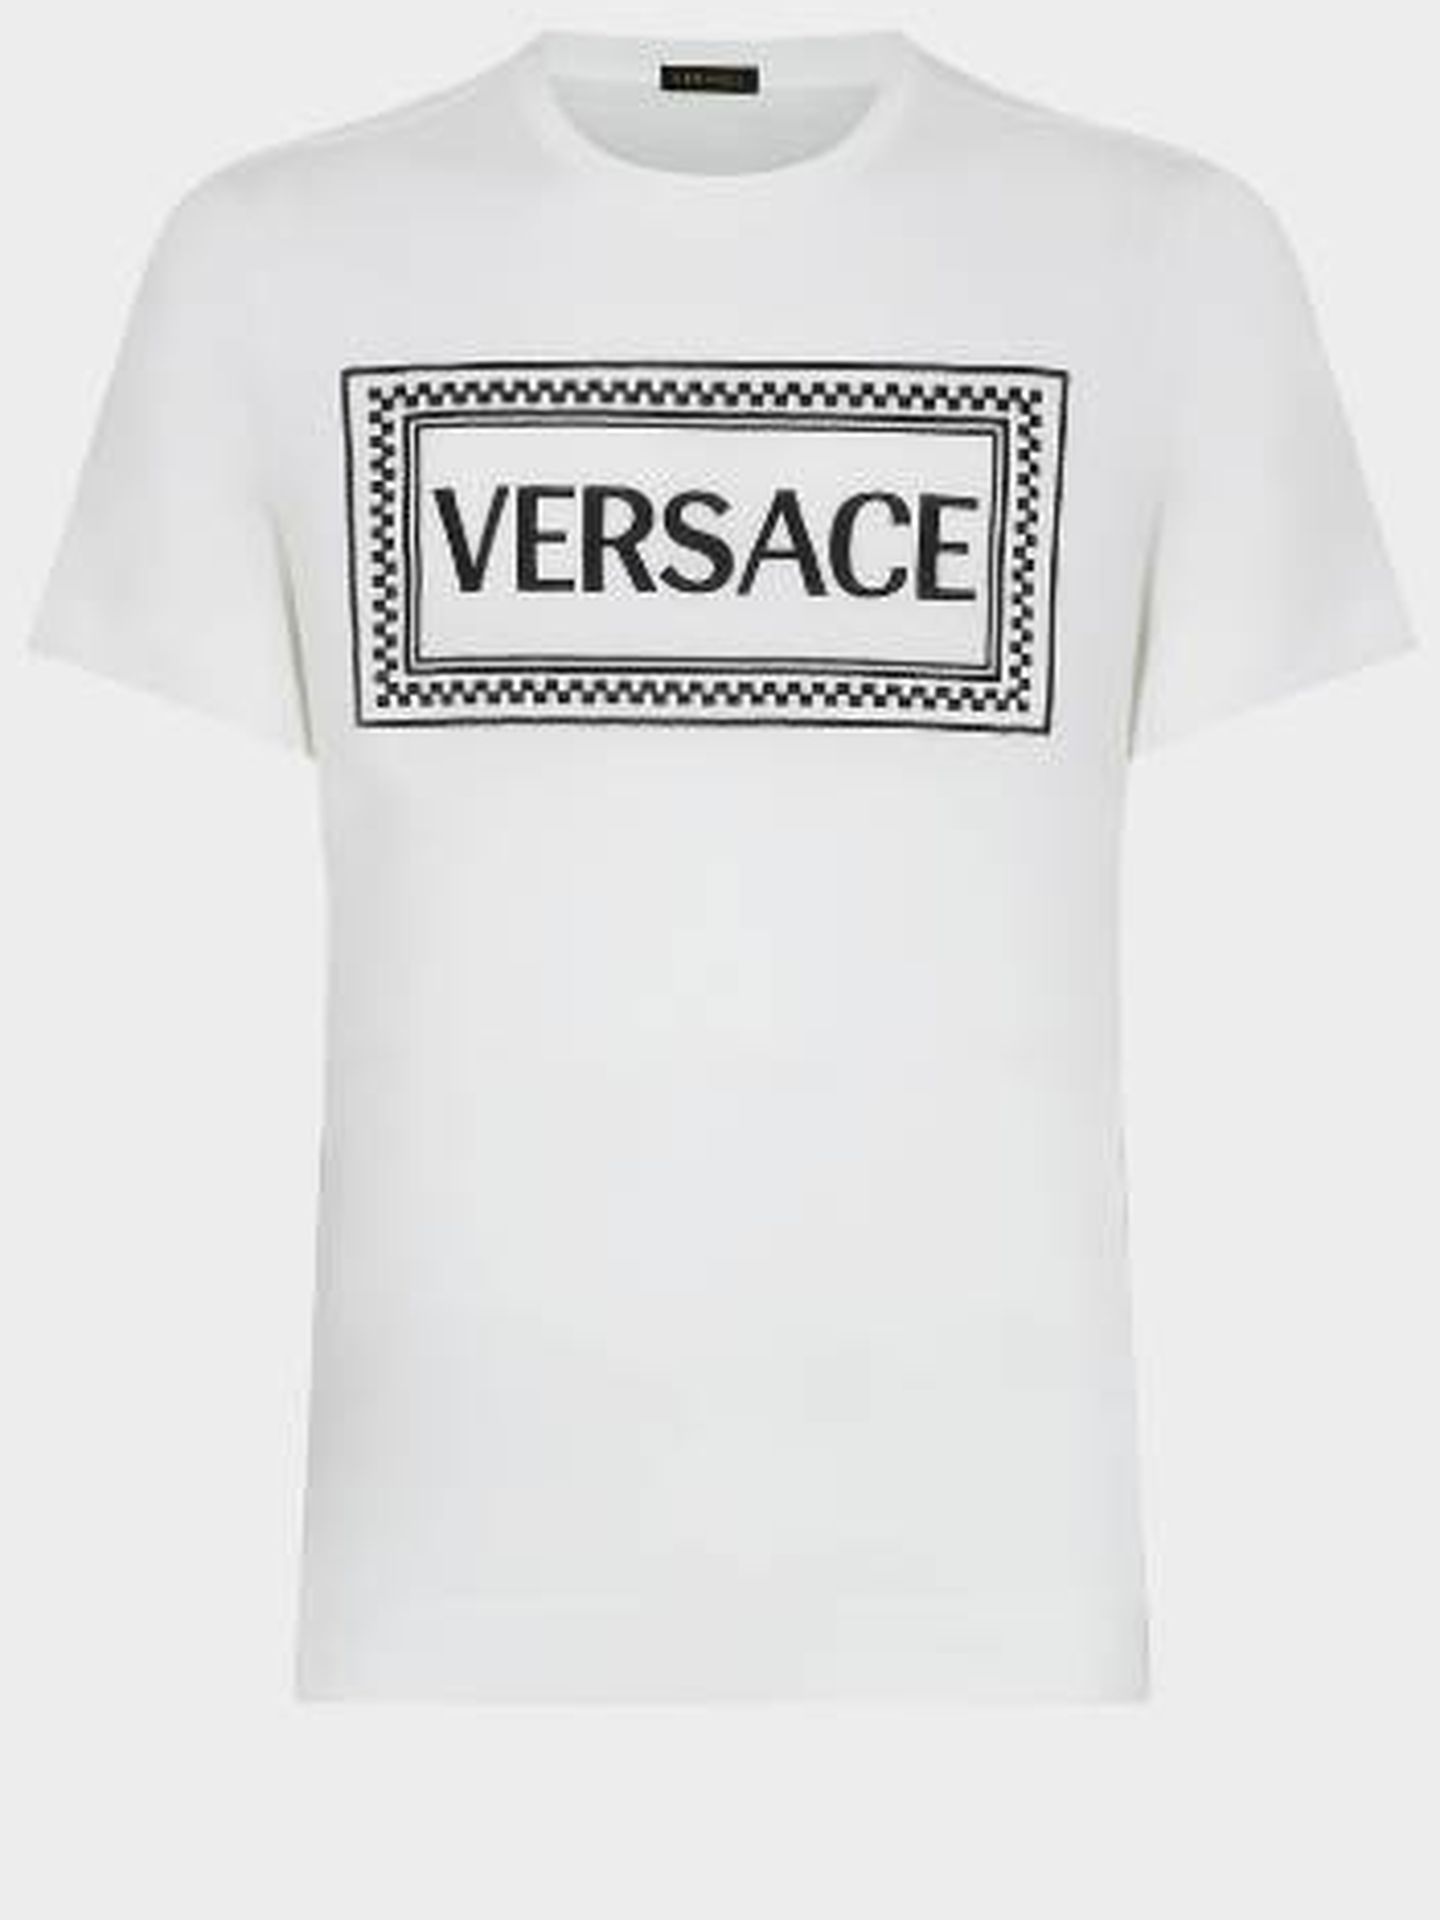 Versace.